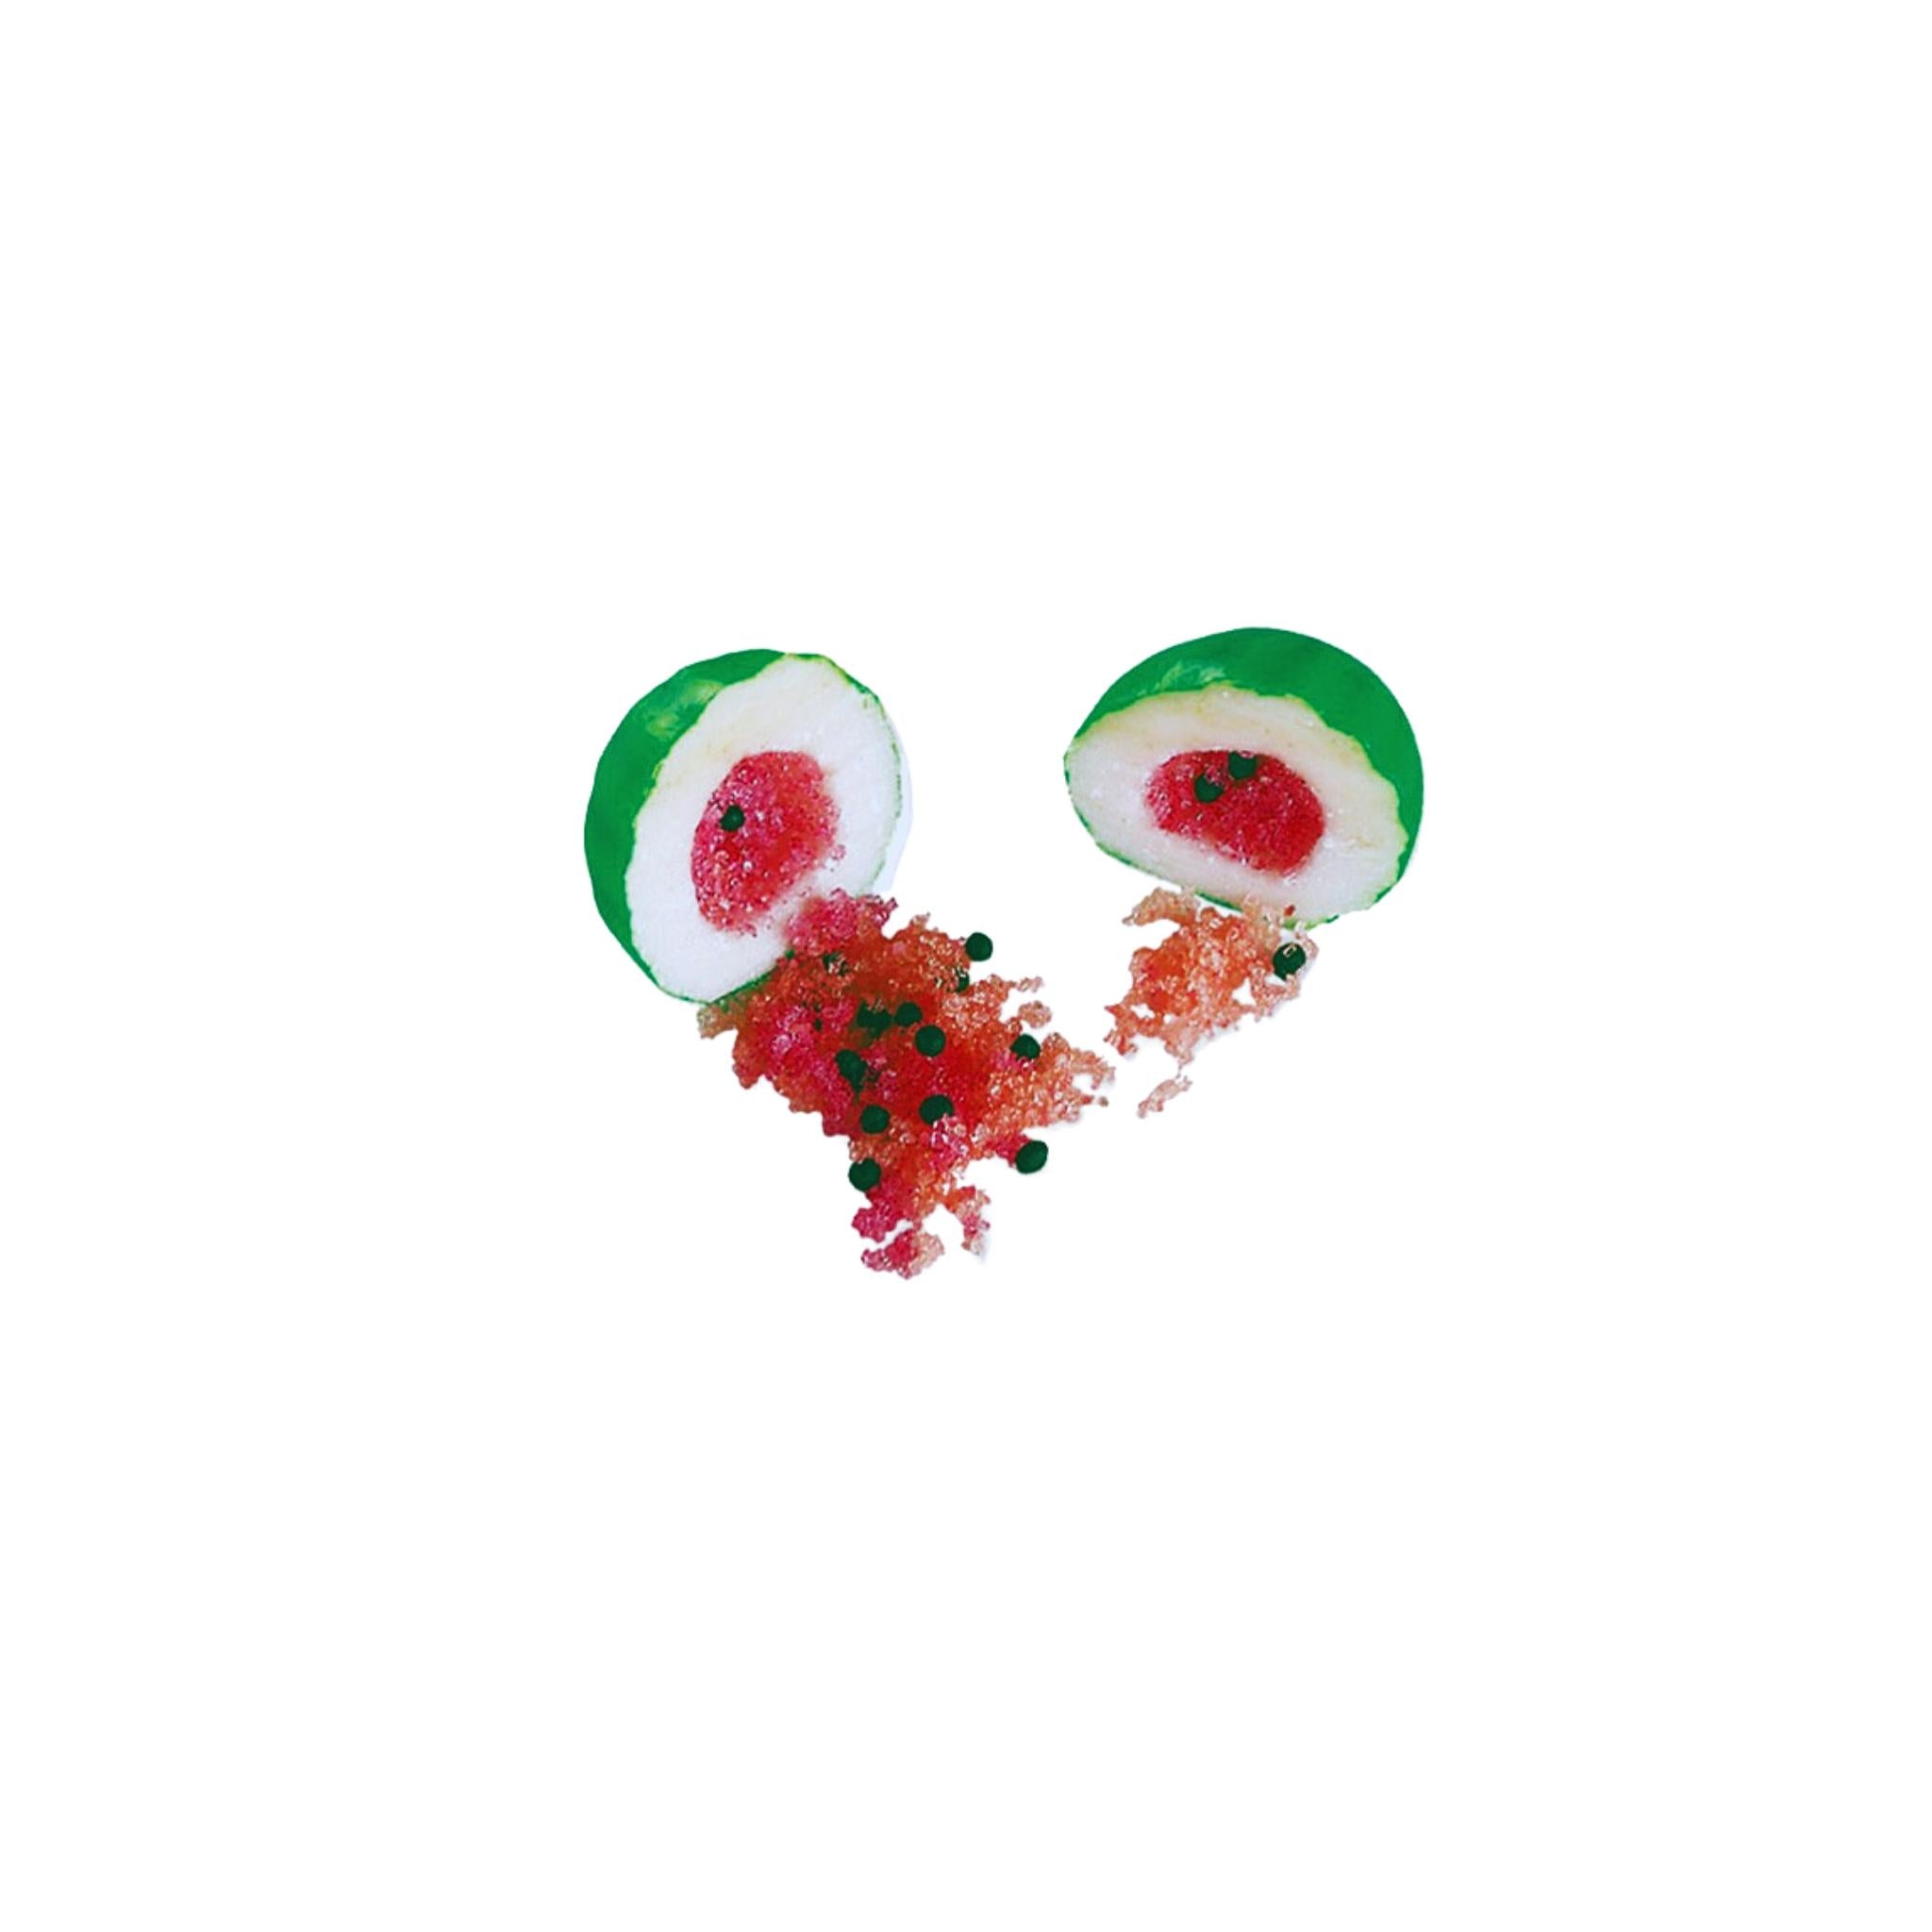 Fini Watermelon Bubble Gum - 5g